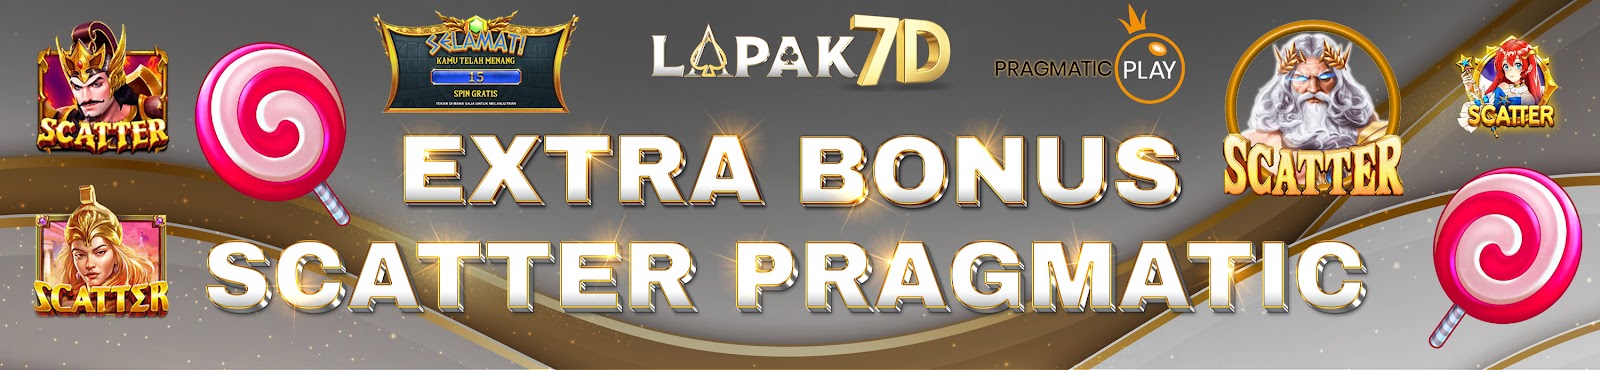 Lapak7D